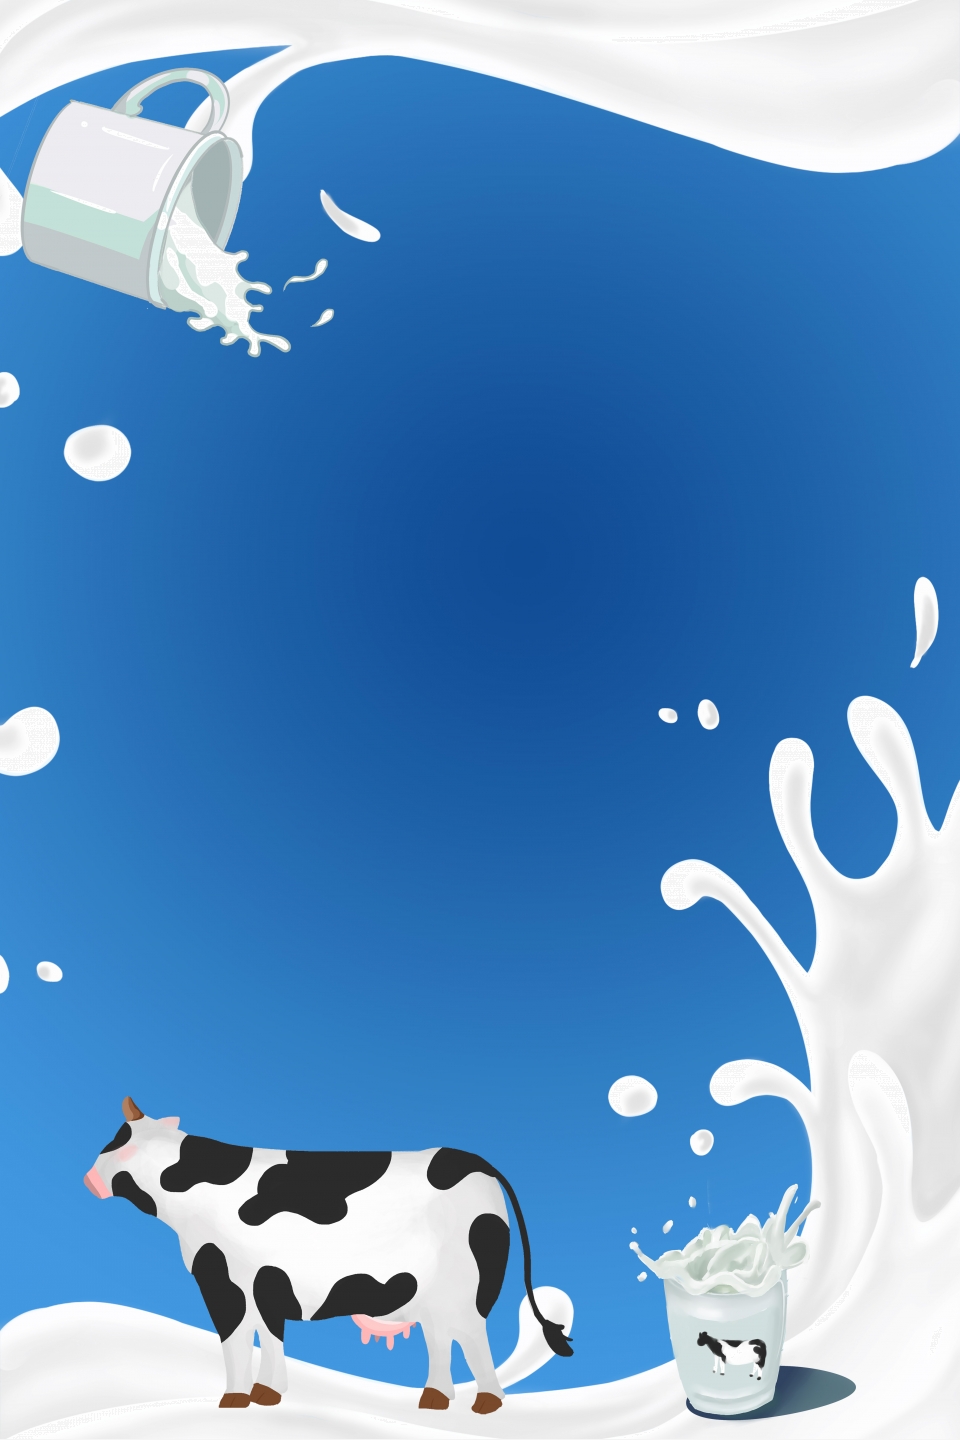 Фон для молочной продукции